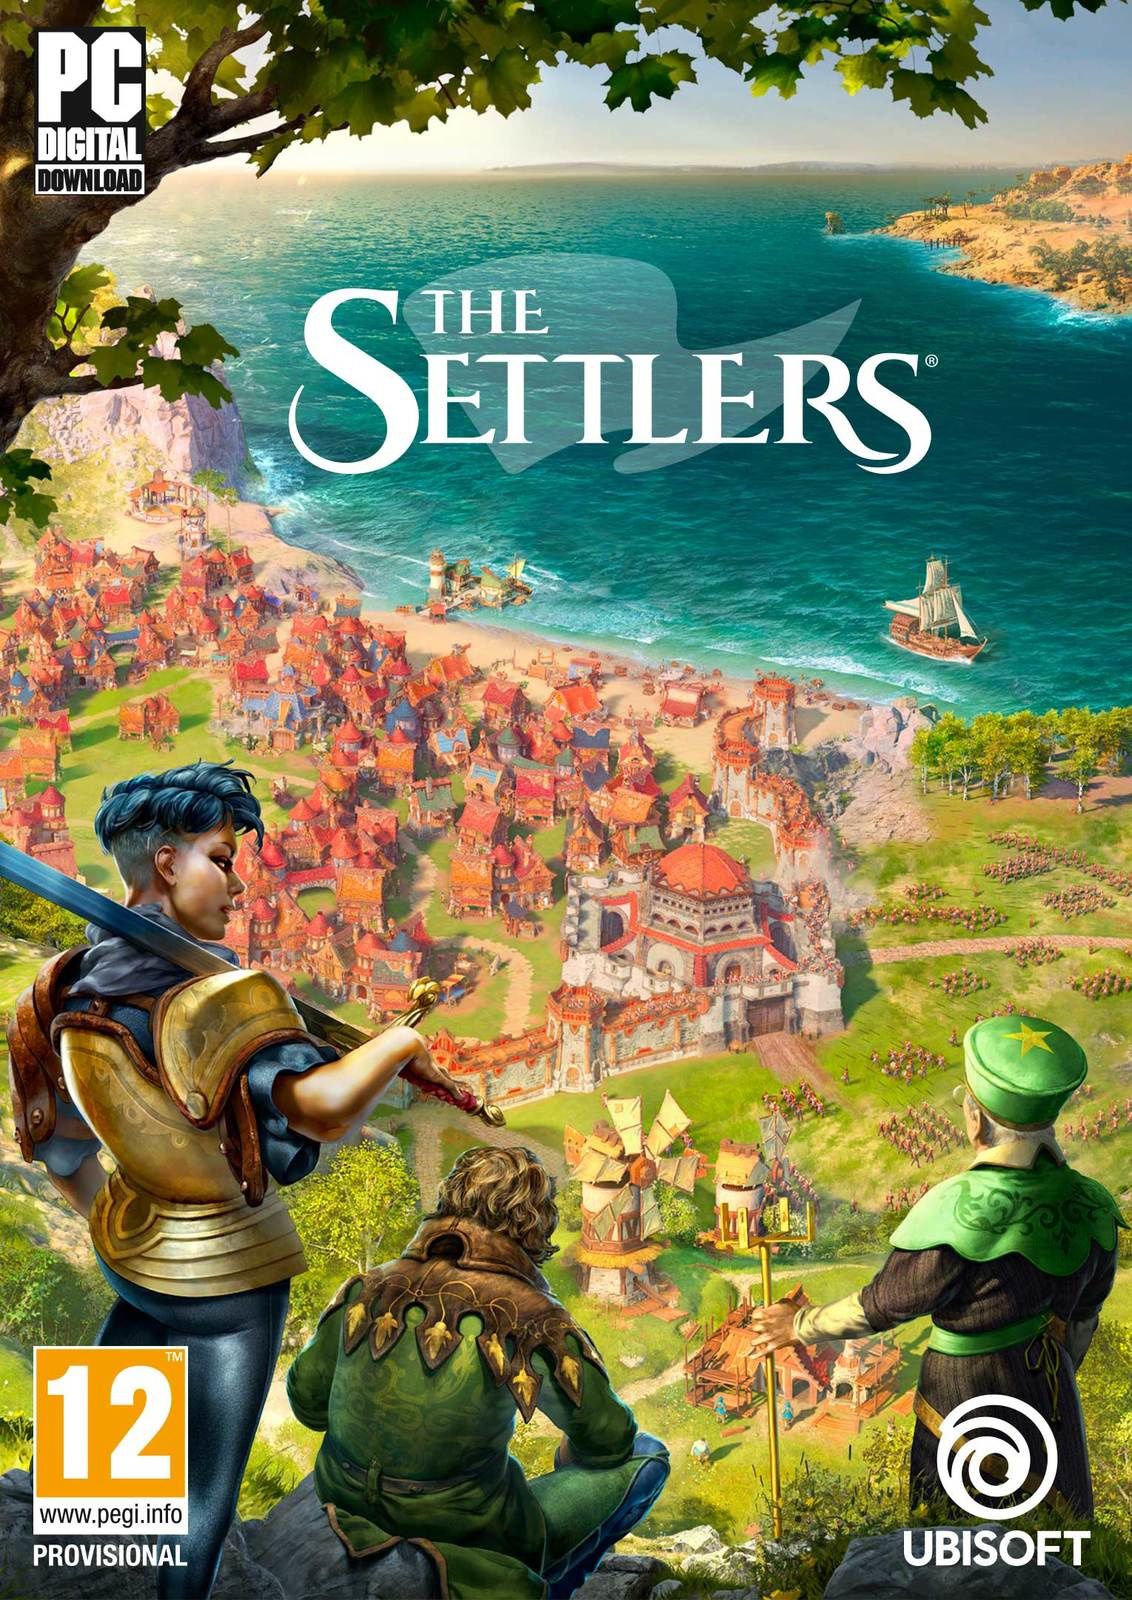  The Settlers, le célèbre jeu de stratégie et de gestion, sortira sur PC en 2020